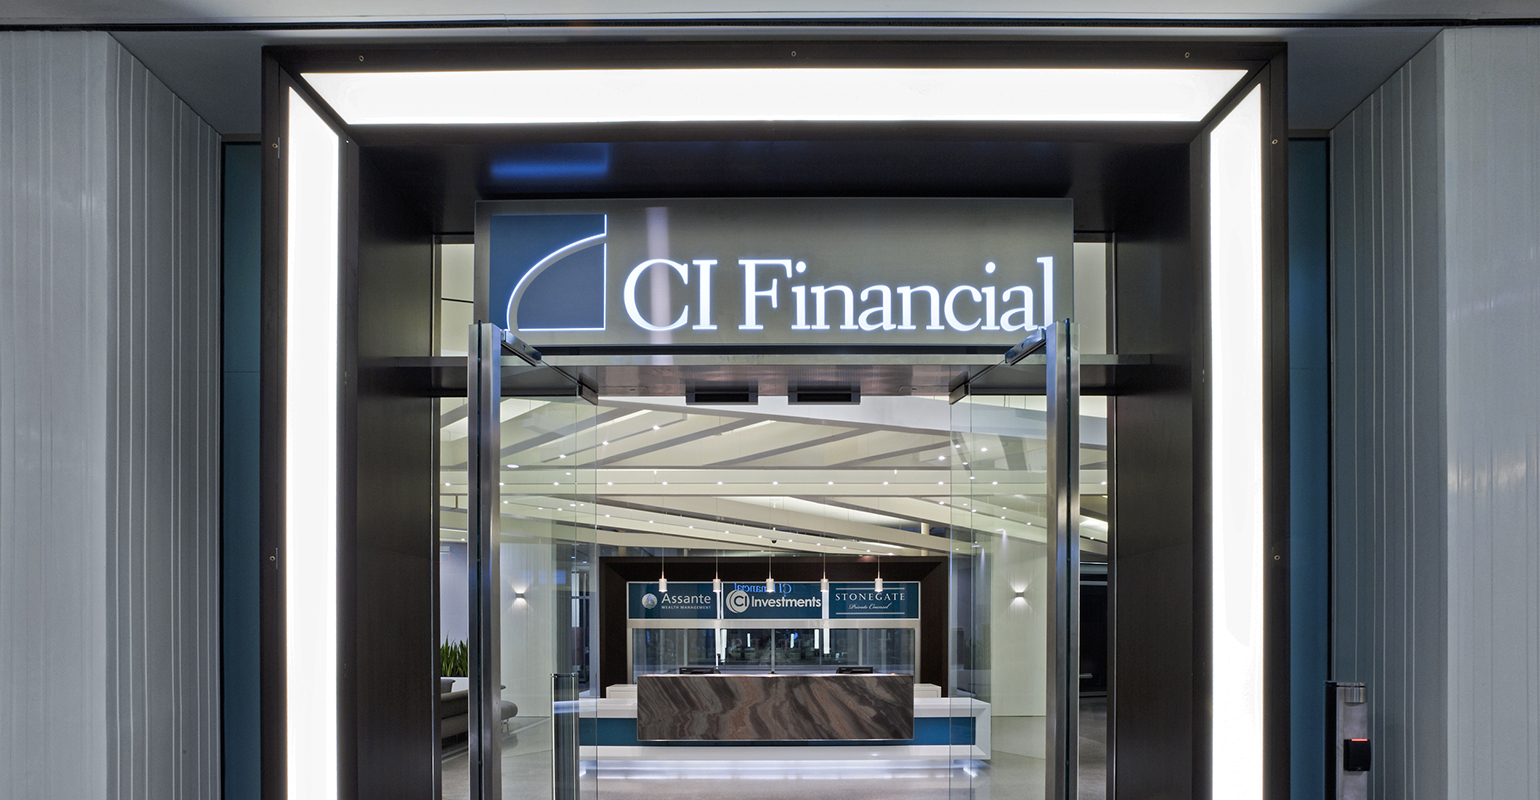 ci financial doorway